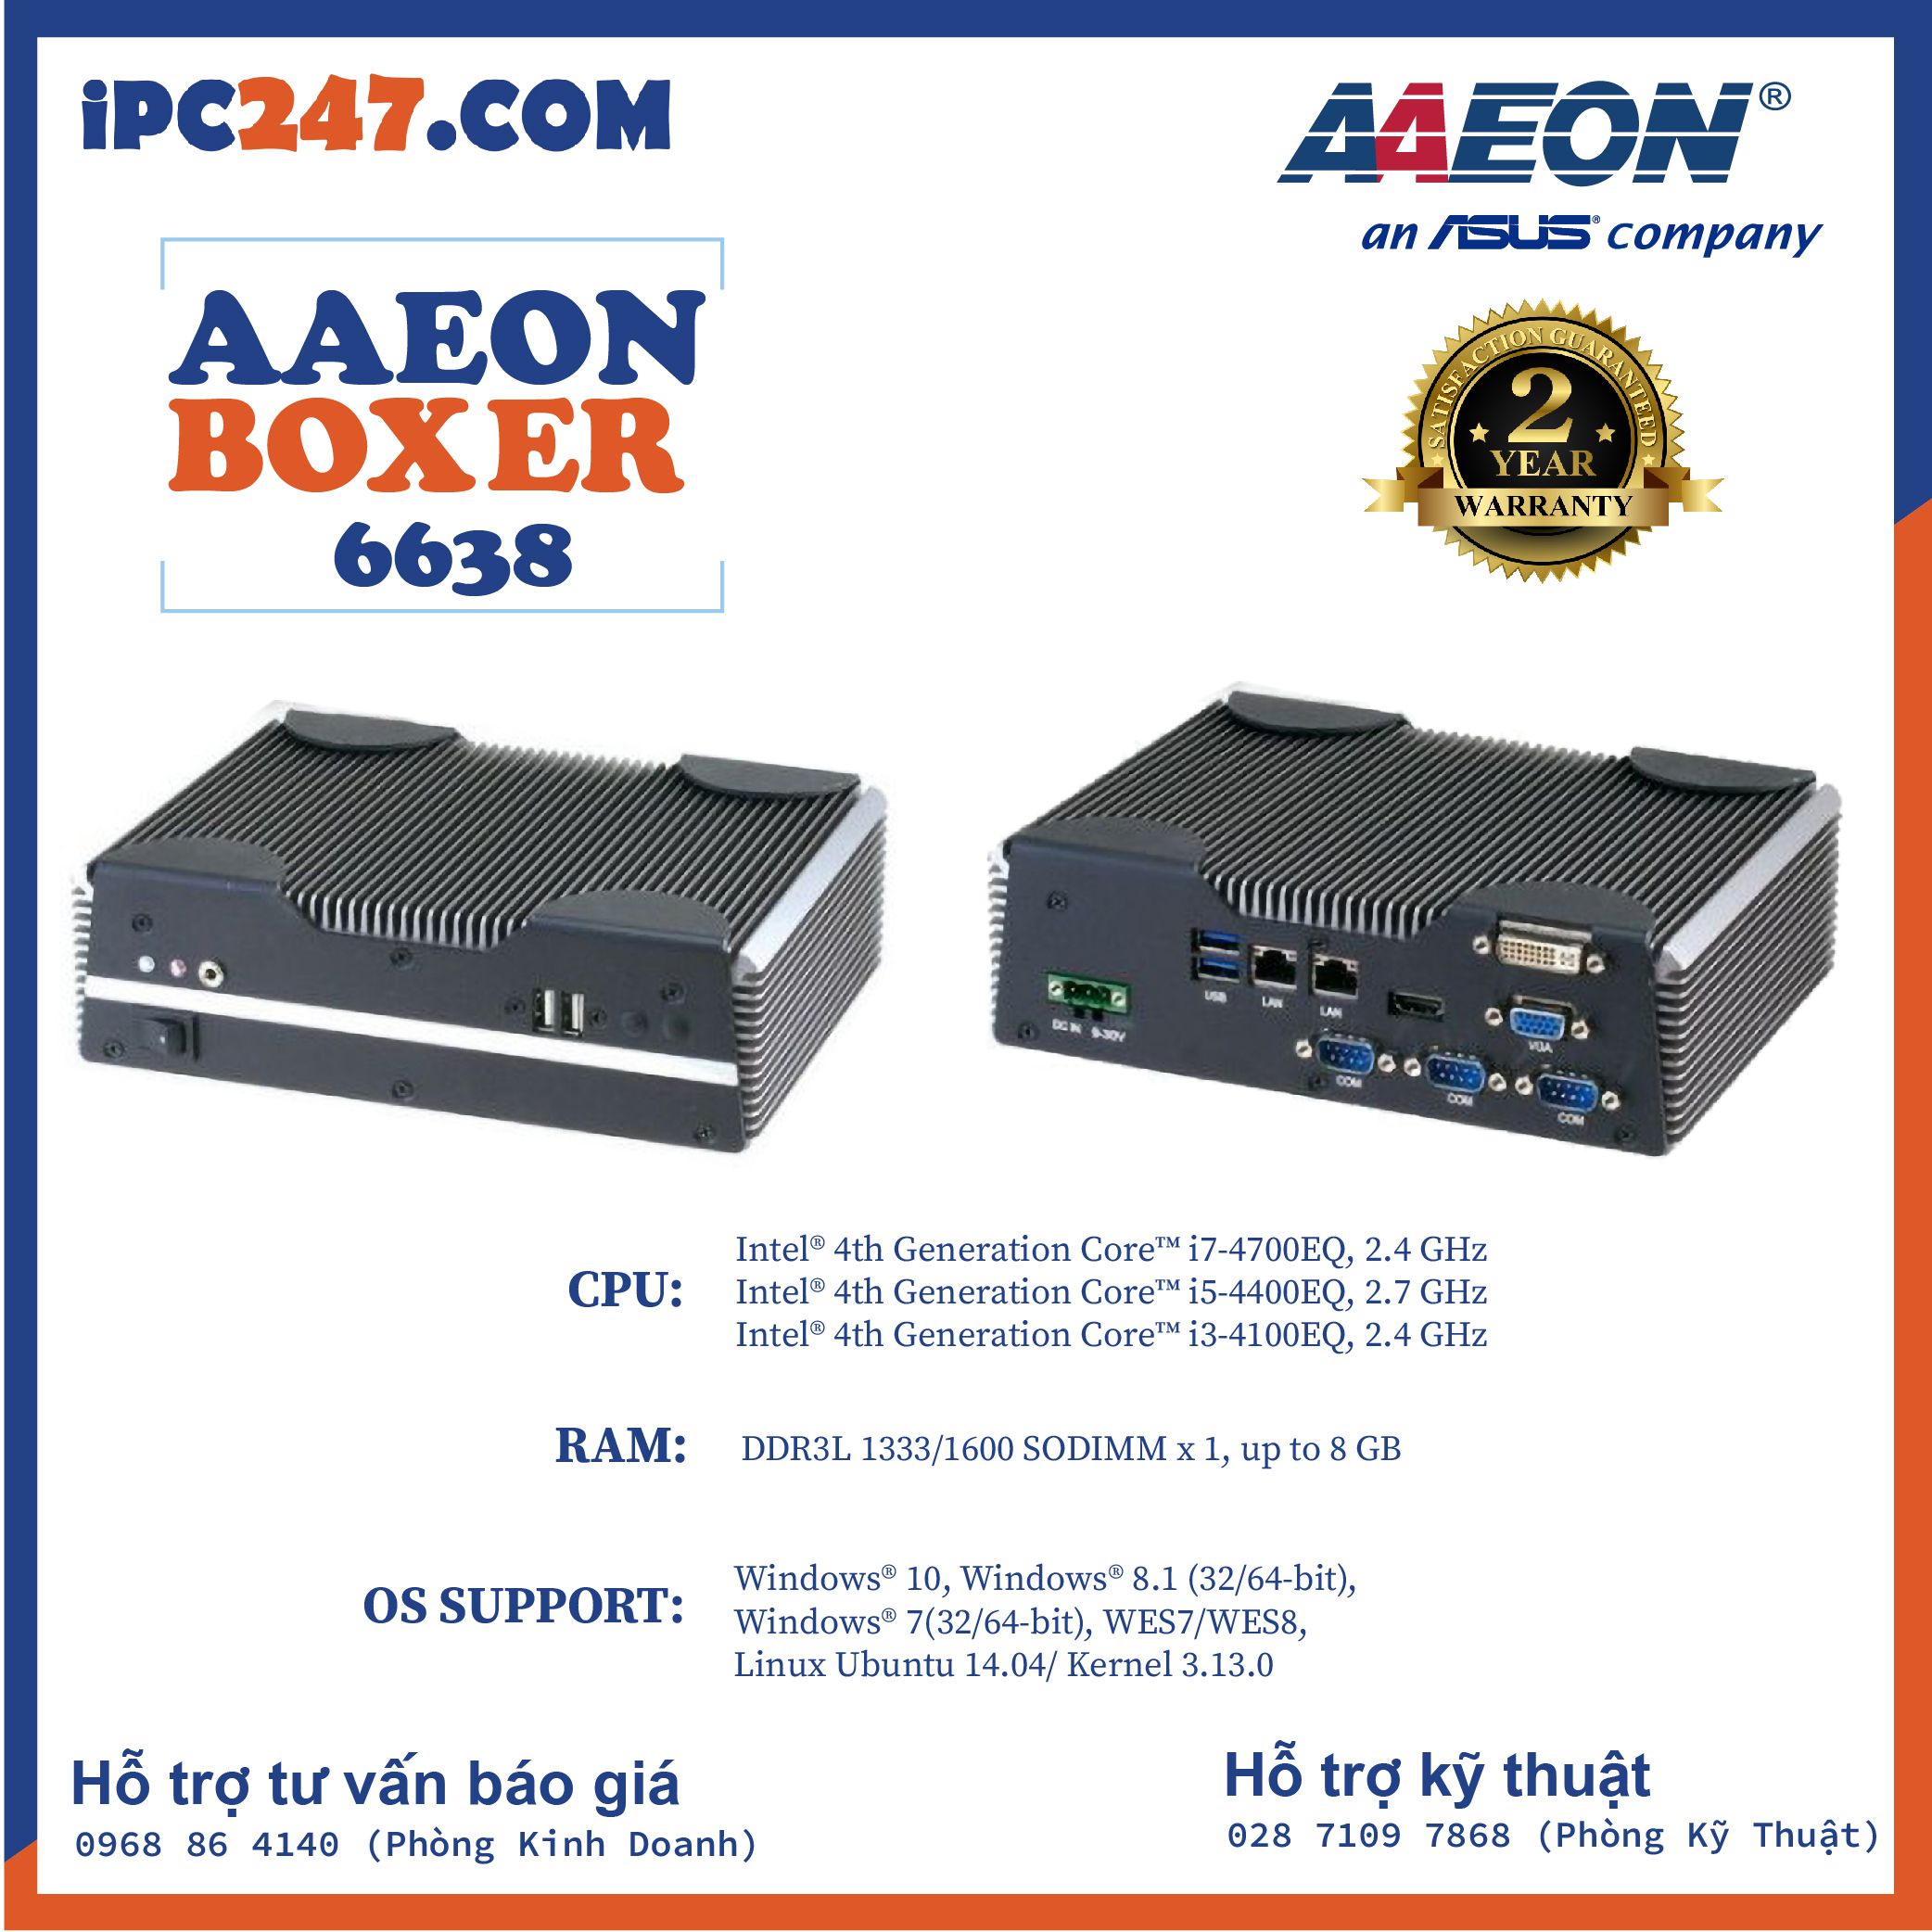 Máy tính công nghiệp không quạt AAEON AEC 6638